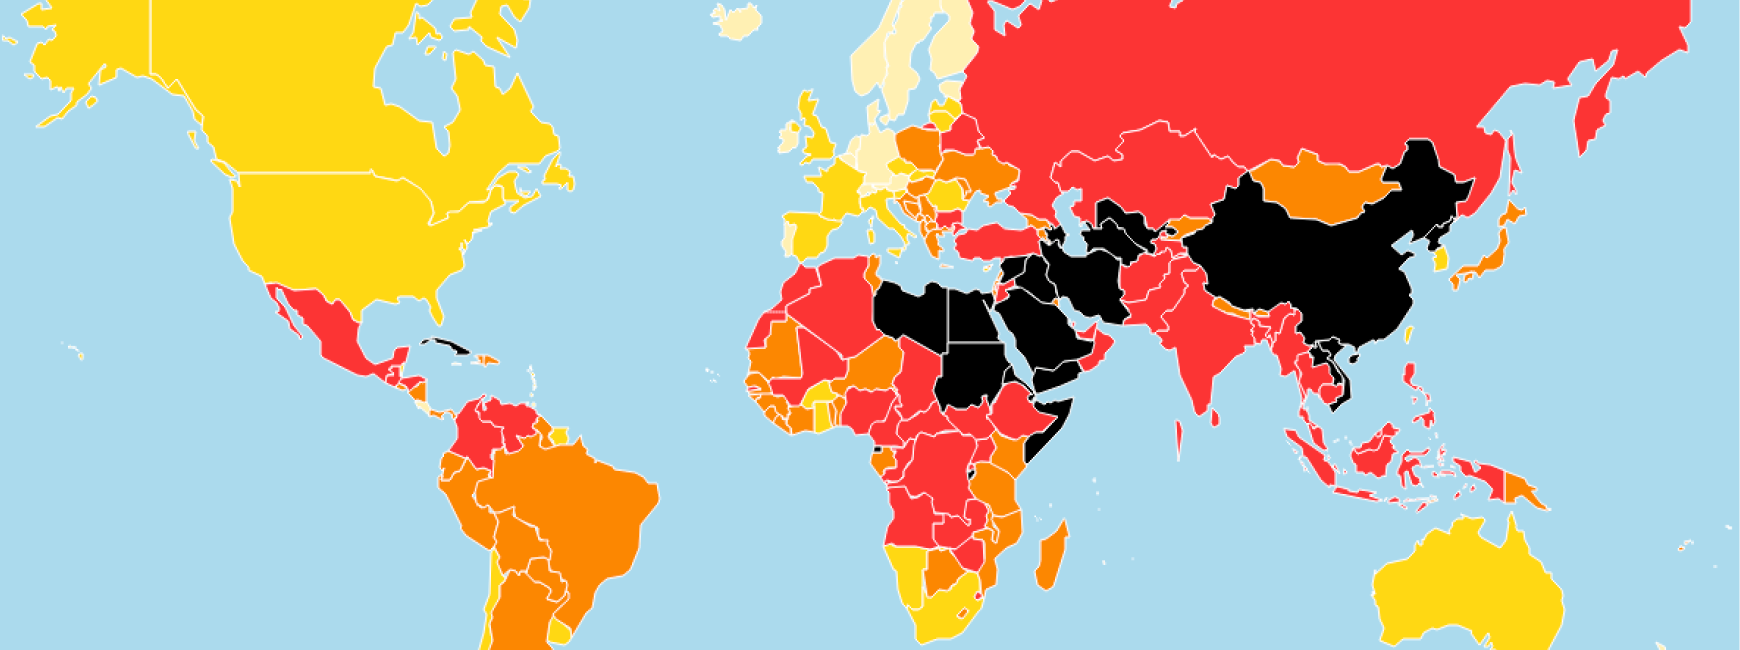 2020年世界報道の自由指数マップ